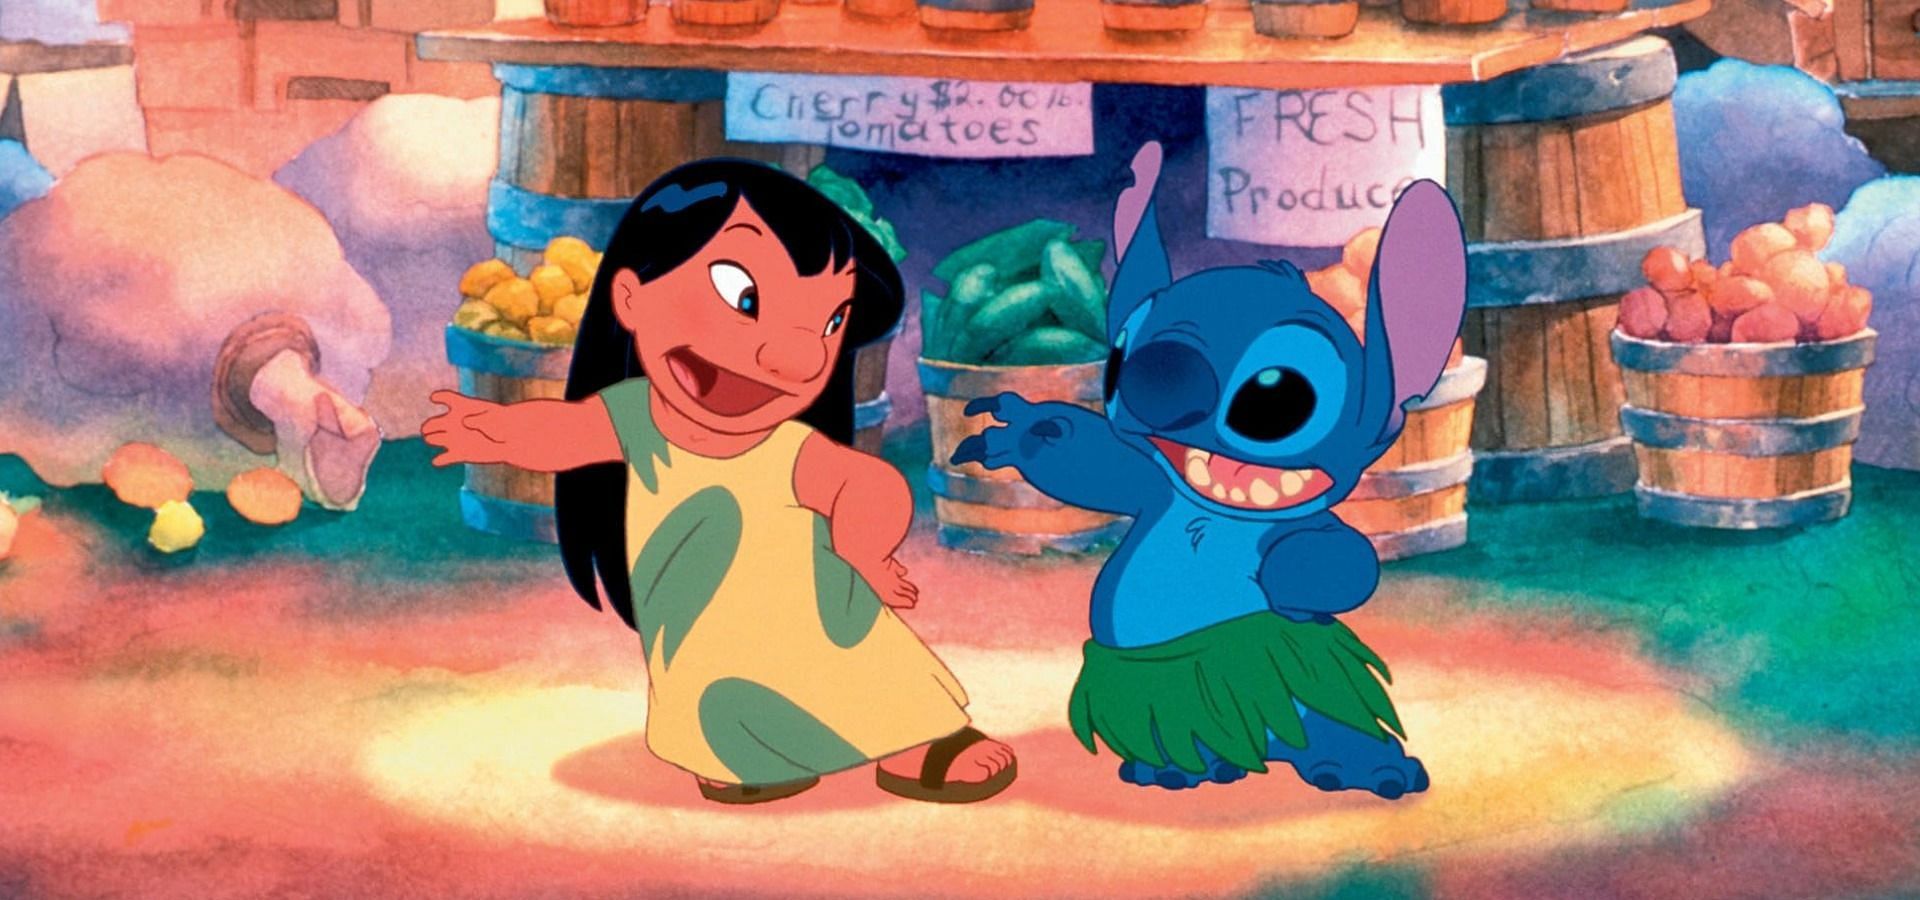 Lilo &amp; Stitch (2002) (Image via imdb)